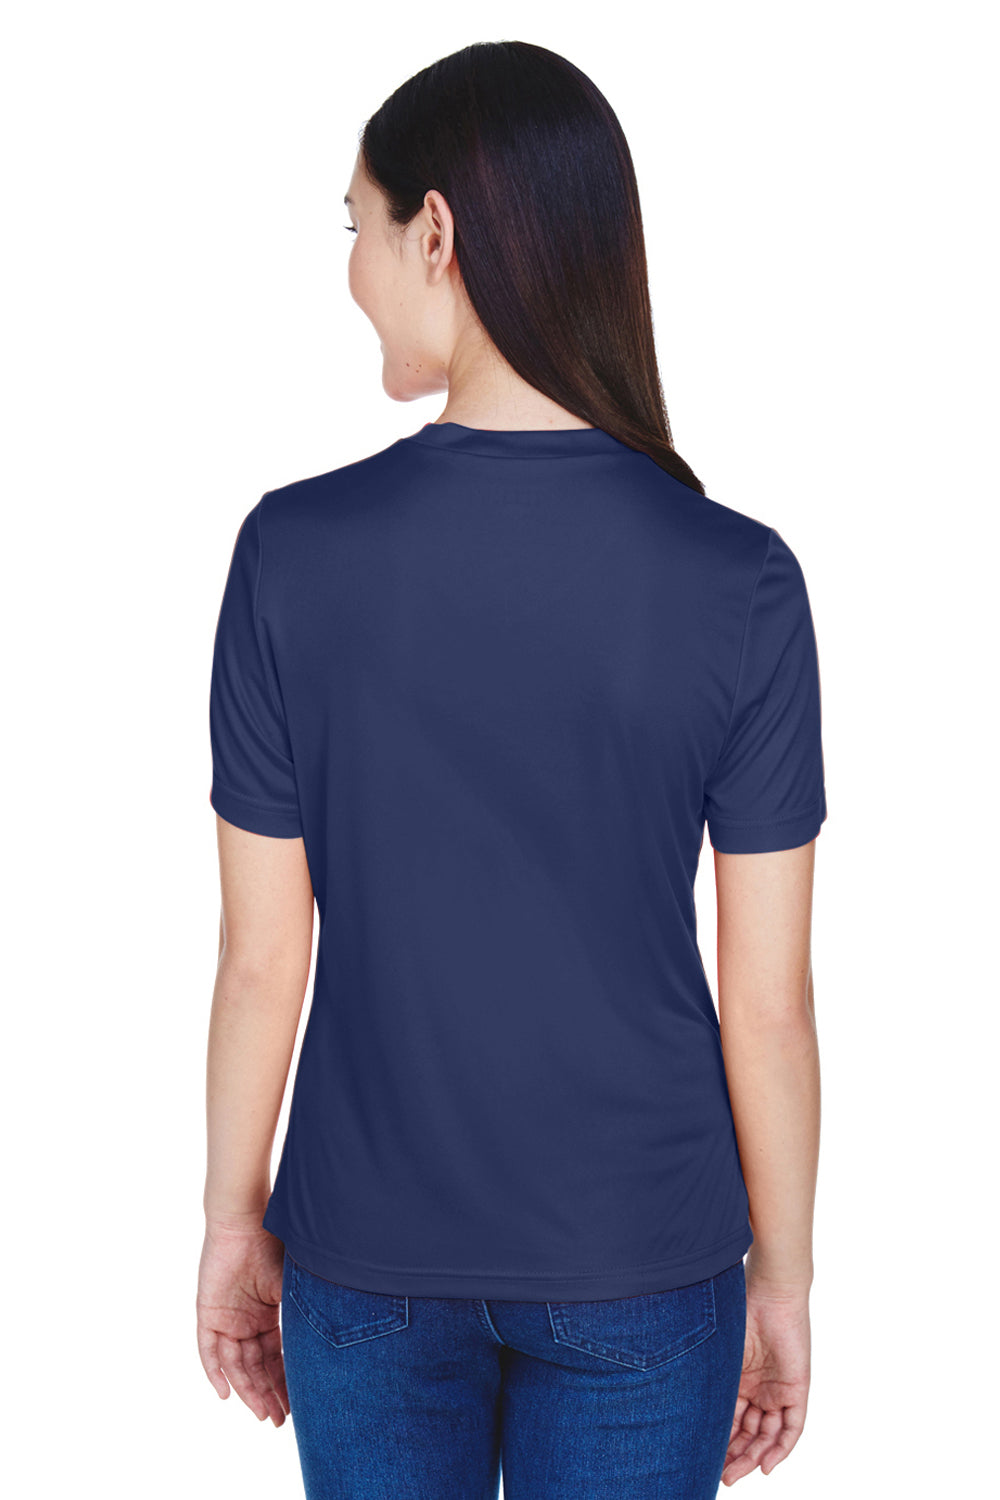 Team 365 TT11W Womens Zone Performance Moisture Wicking Short Sleeve V-Neck T-Shirt Navy Blue Back